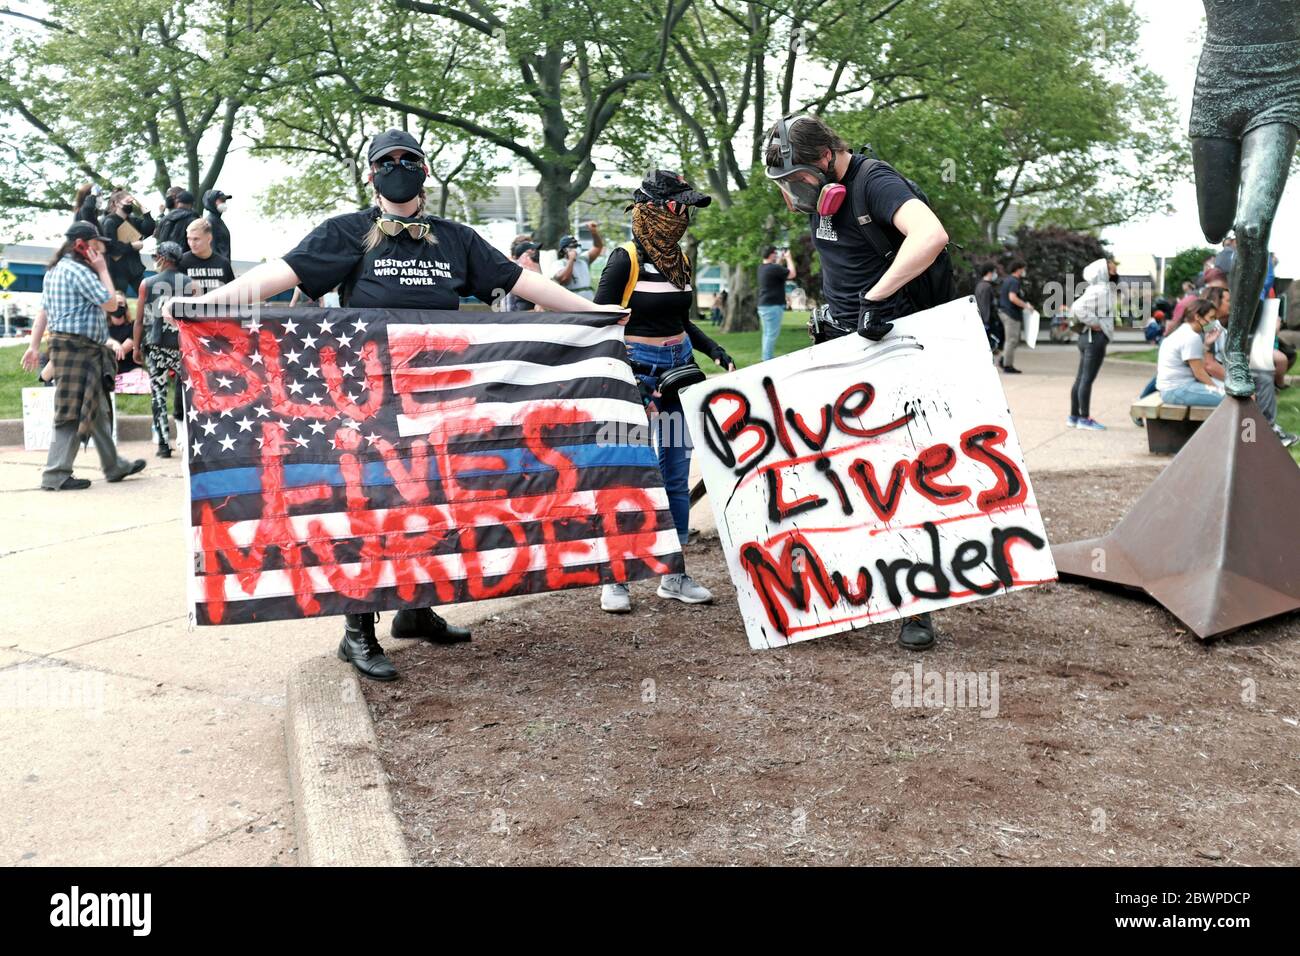 Los manifestantes en Cleveland, Ohio, EE.UU. Llevan letreros que indican el asesinato de Blue Lives durante las protestas contra el asesinato de George Floyd en manos de la policía. Foto de stock